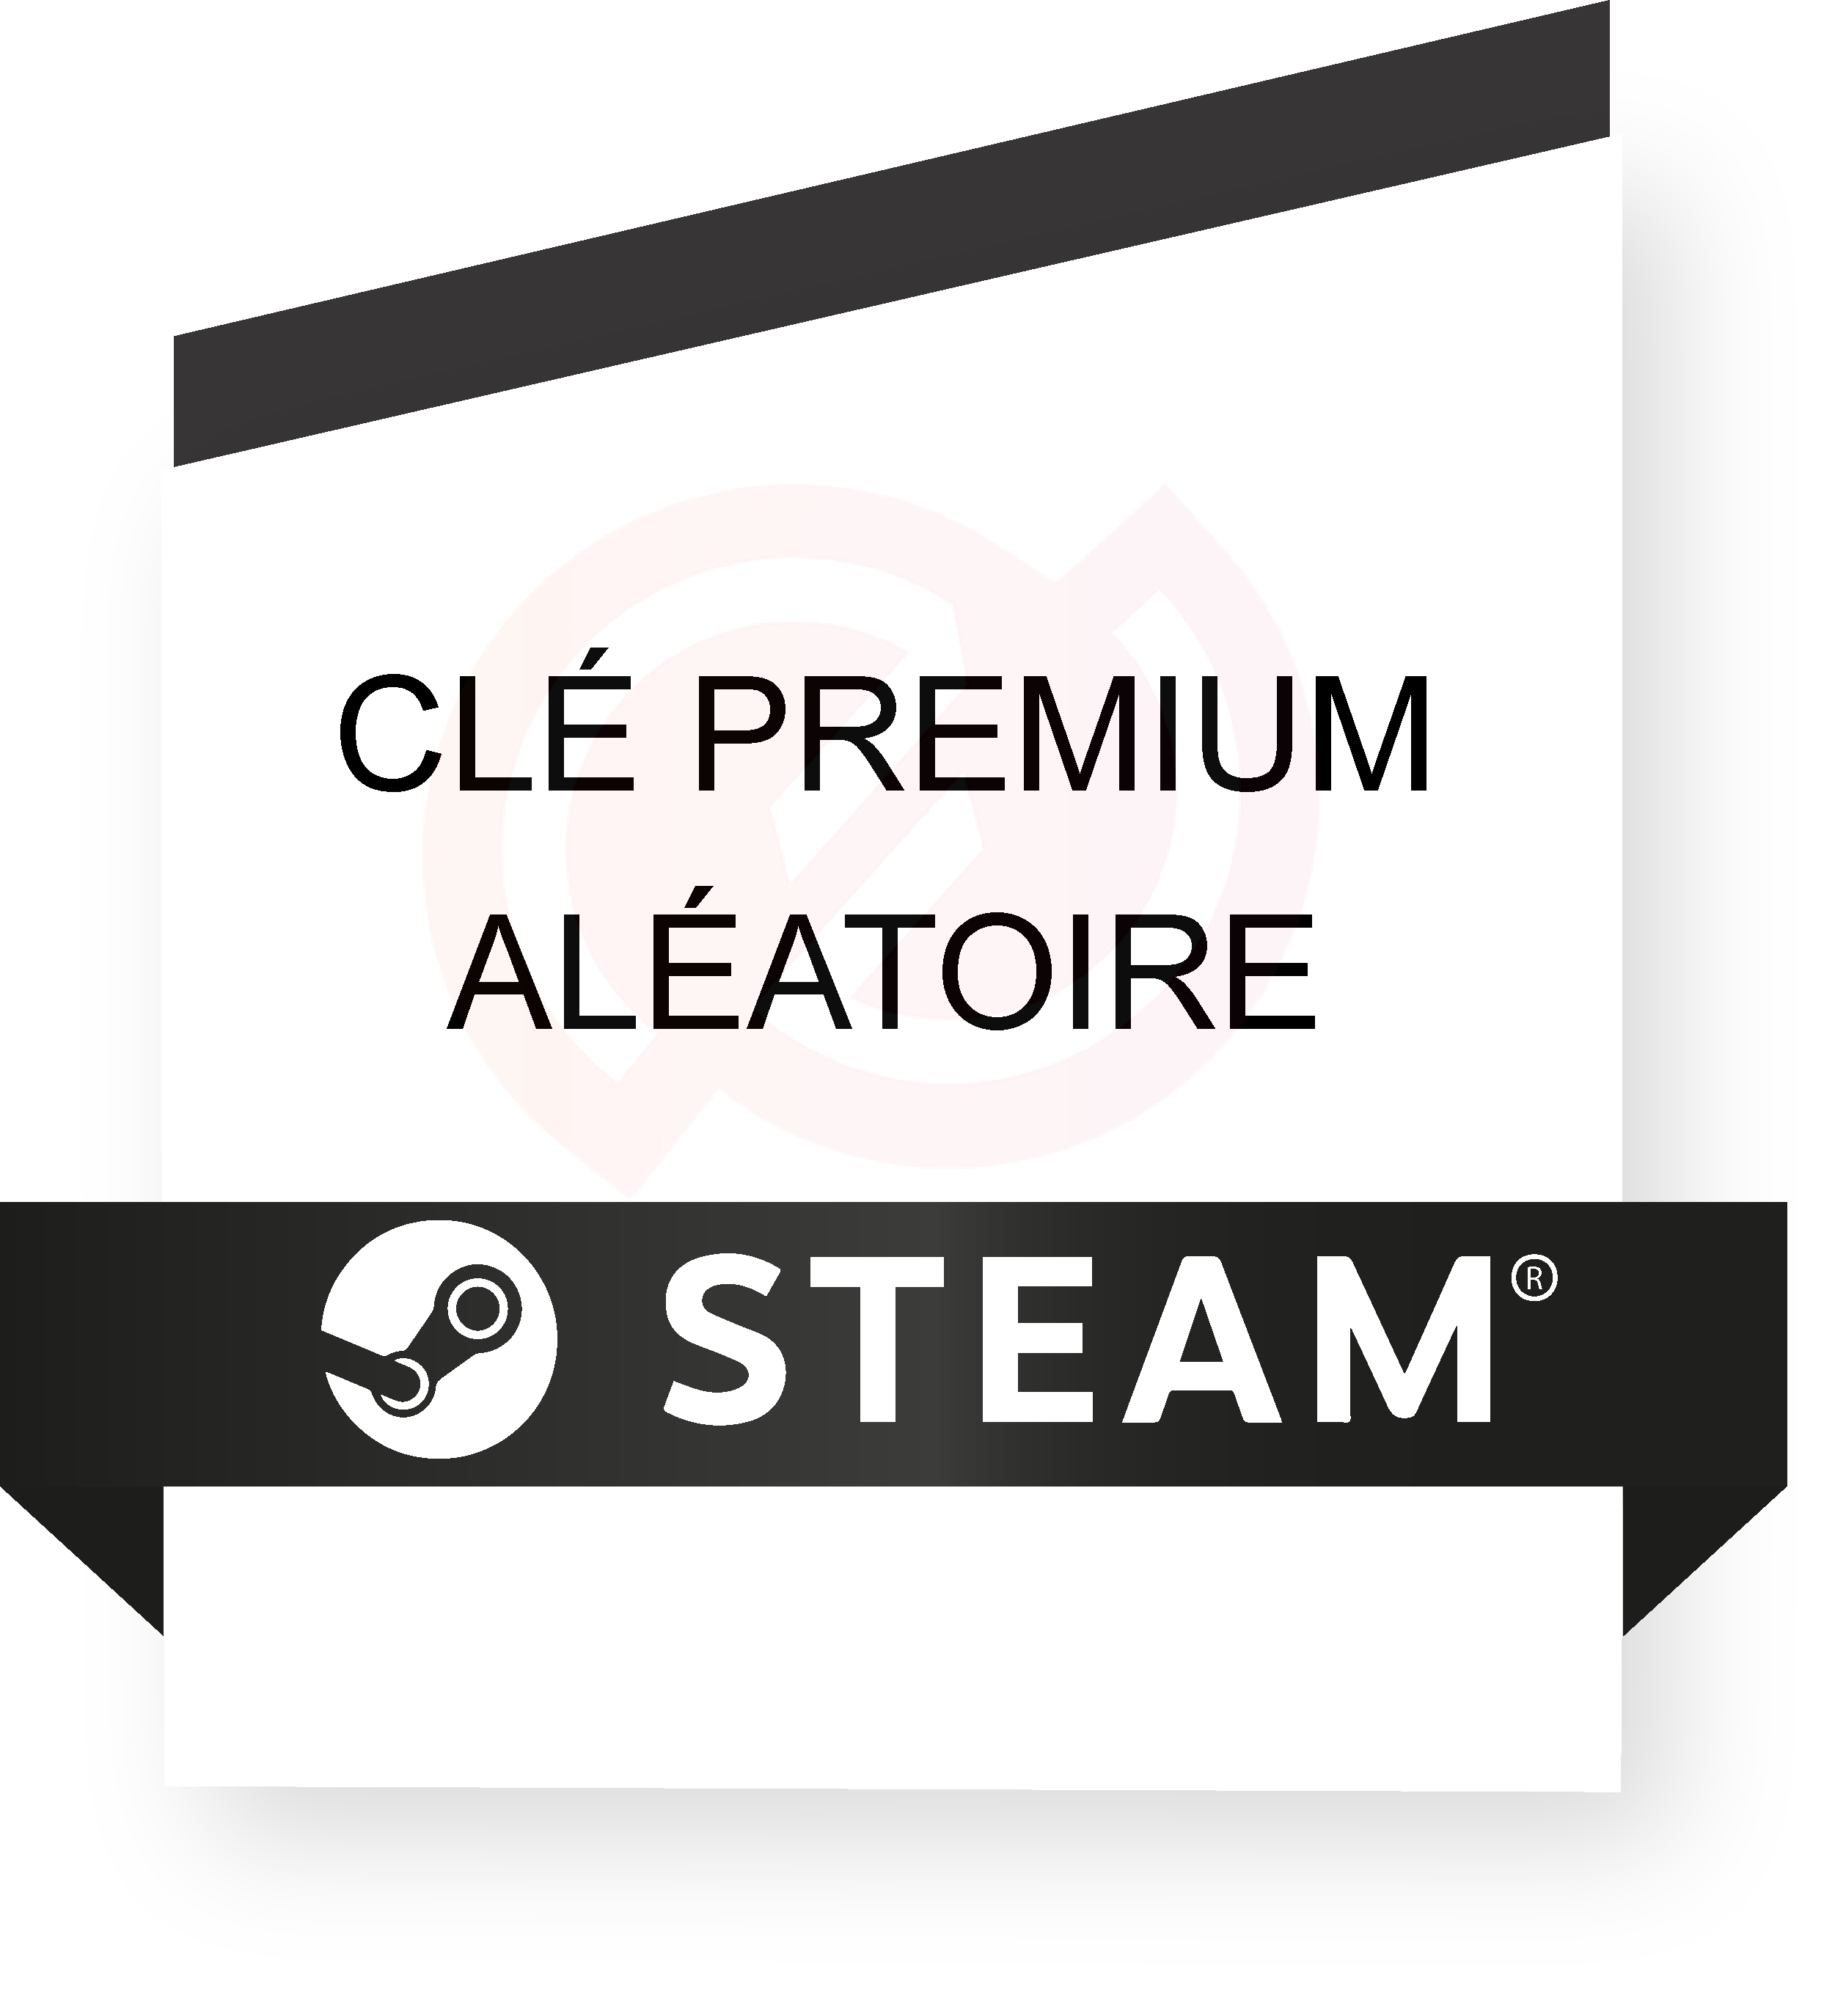 Coupon Clé Premium aléatoire sur internet - Gueez